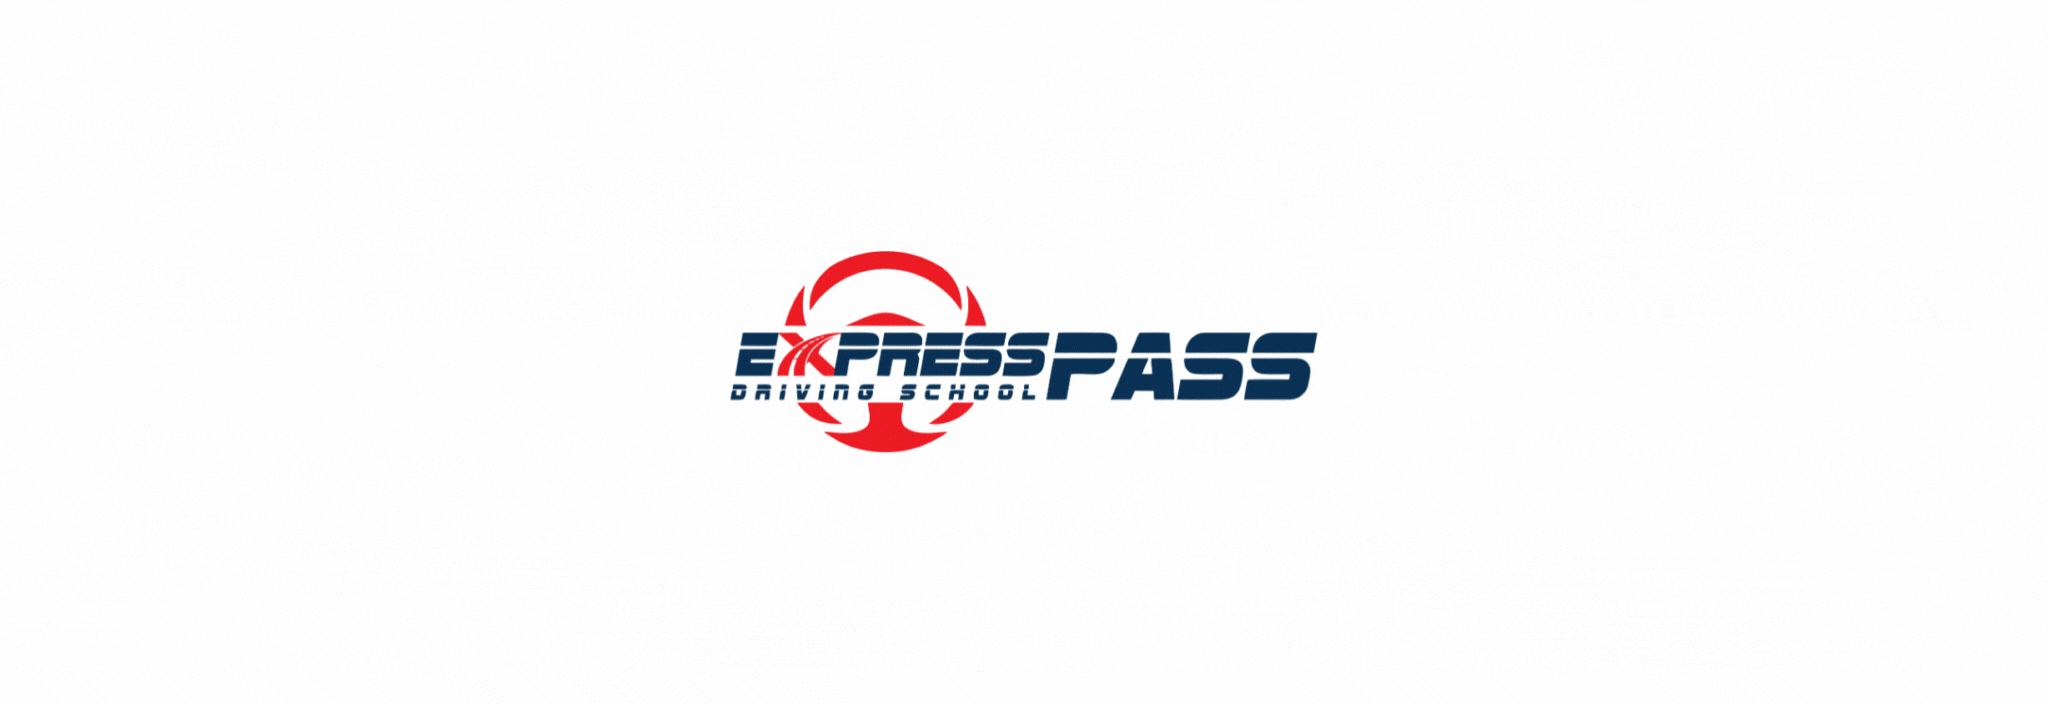 express pass animate logo 3